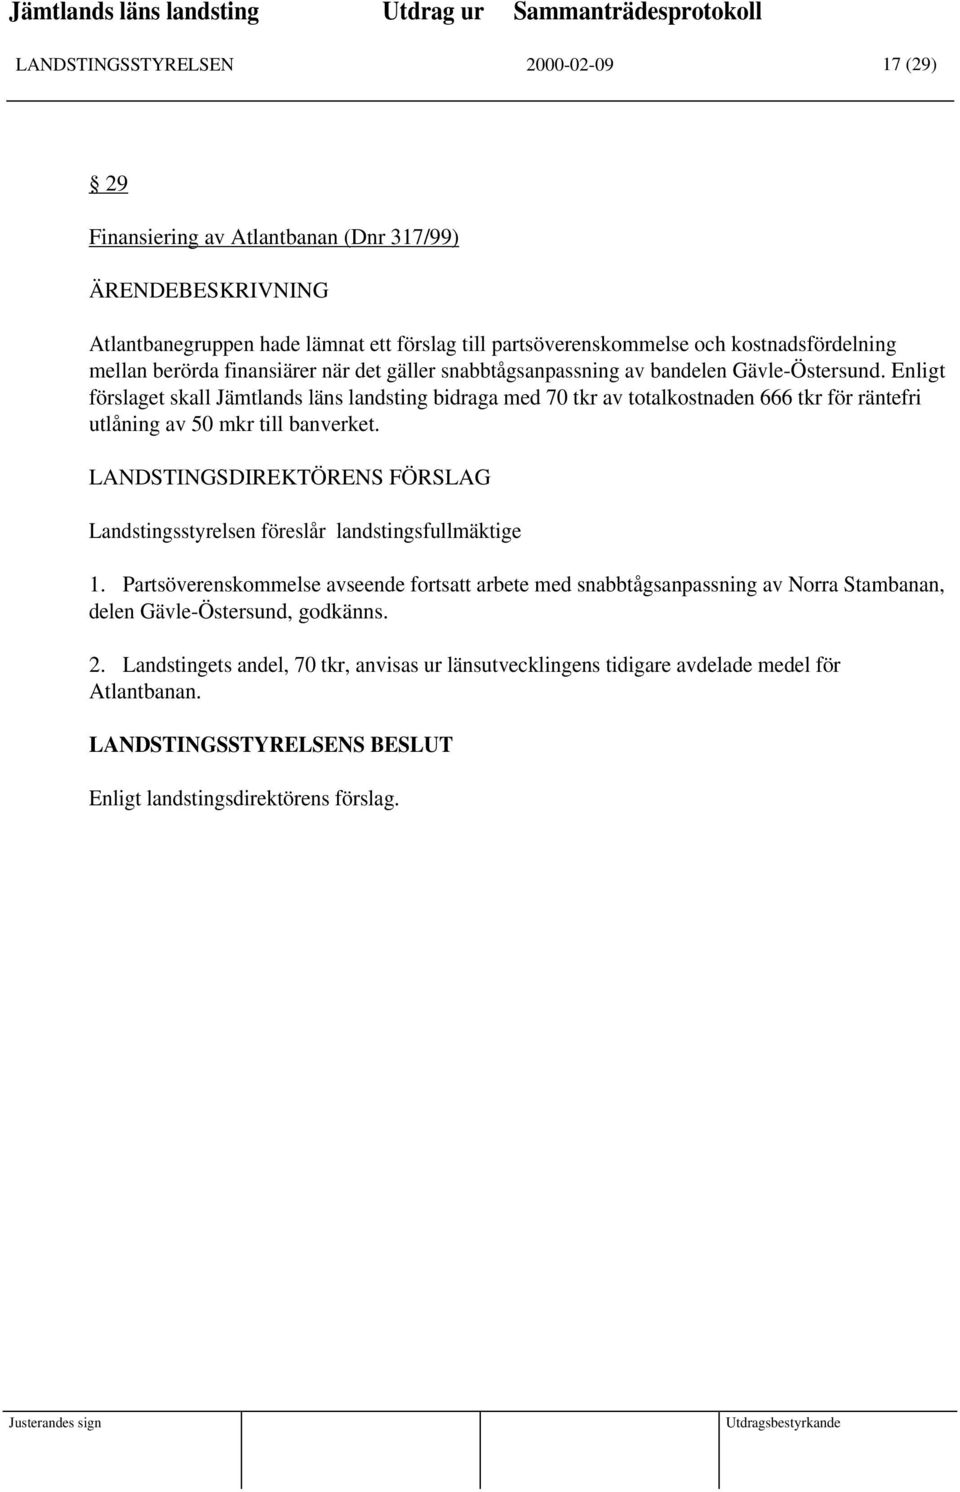 Enligt förslaget skall Jämtlands läns landsting bidraga med 70 tkr av totalkostnaden 666 tkr för räntefri utlåning av 50 mkr till banverket.